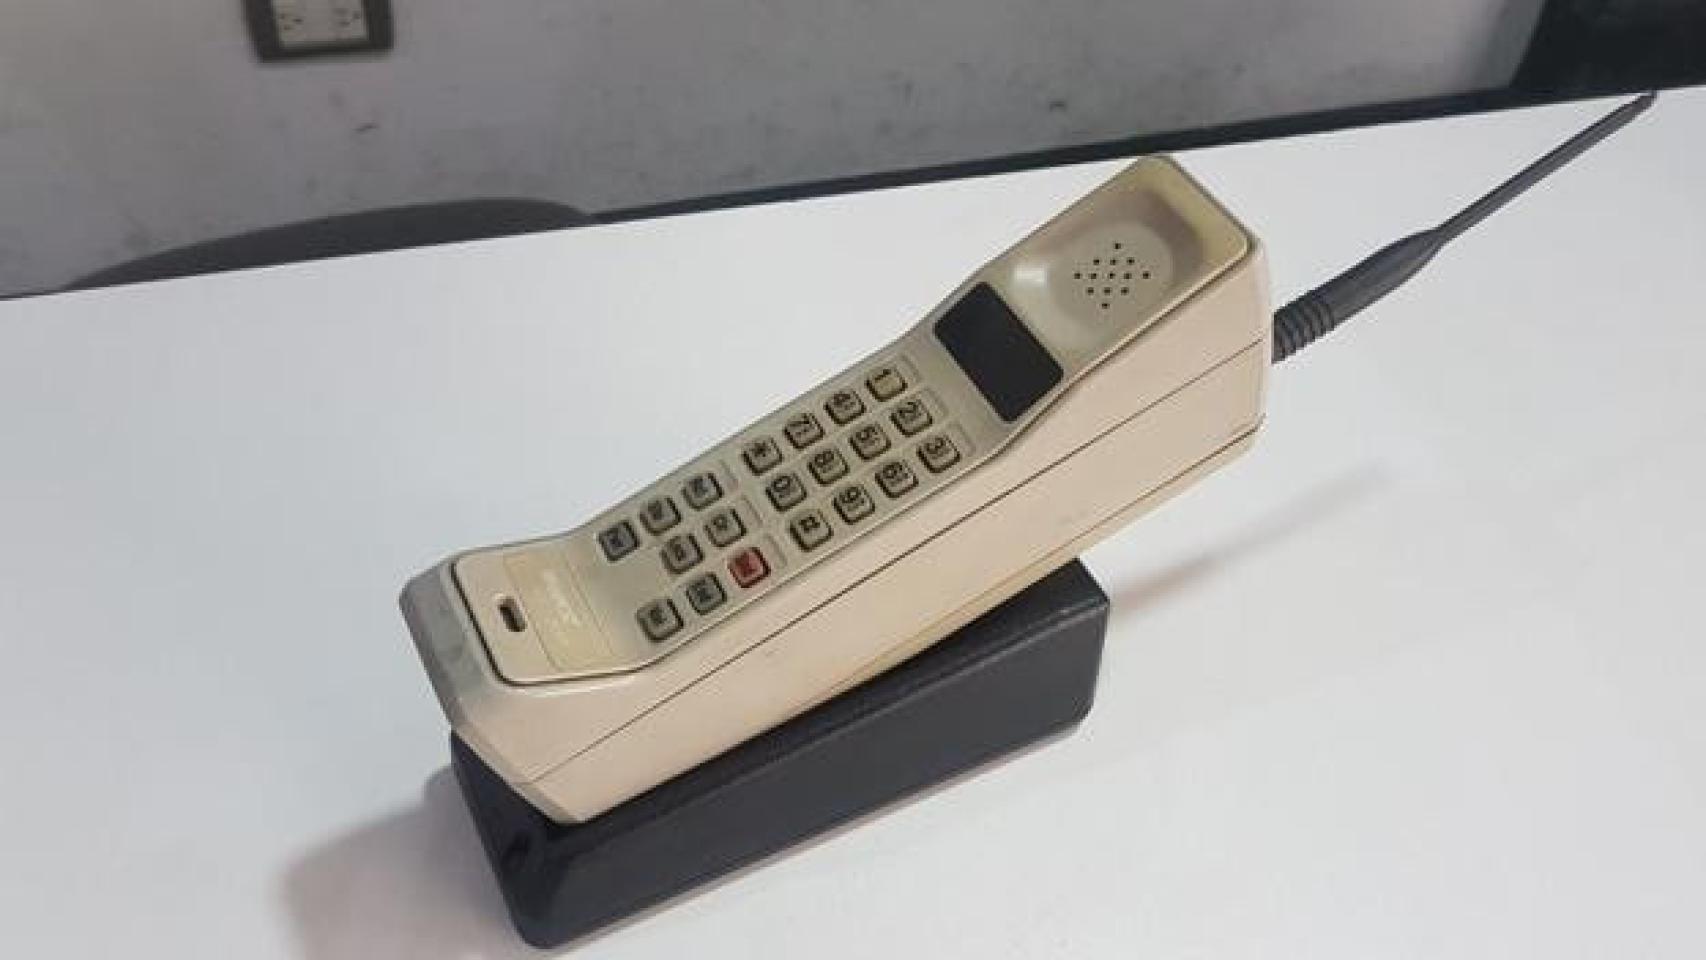 Cuáles son los teléfonos antiguos más caros? - Quora